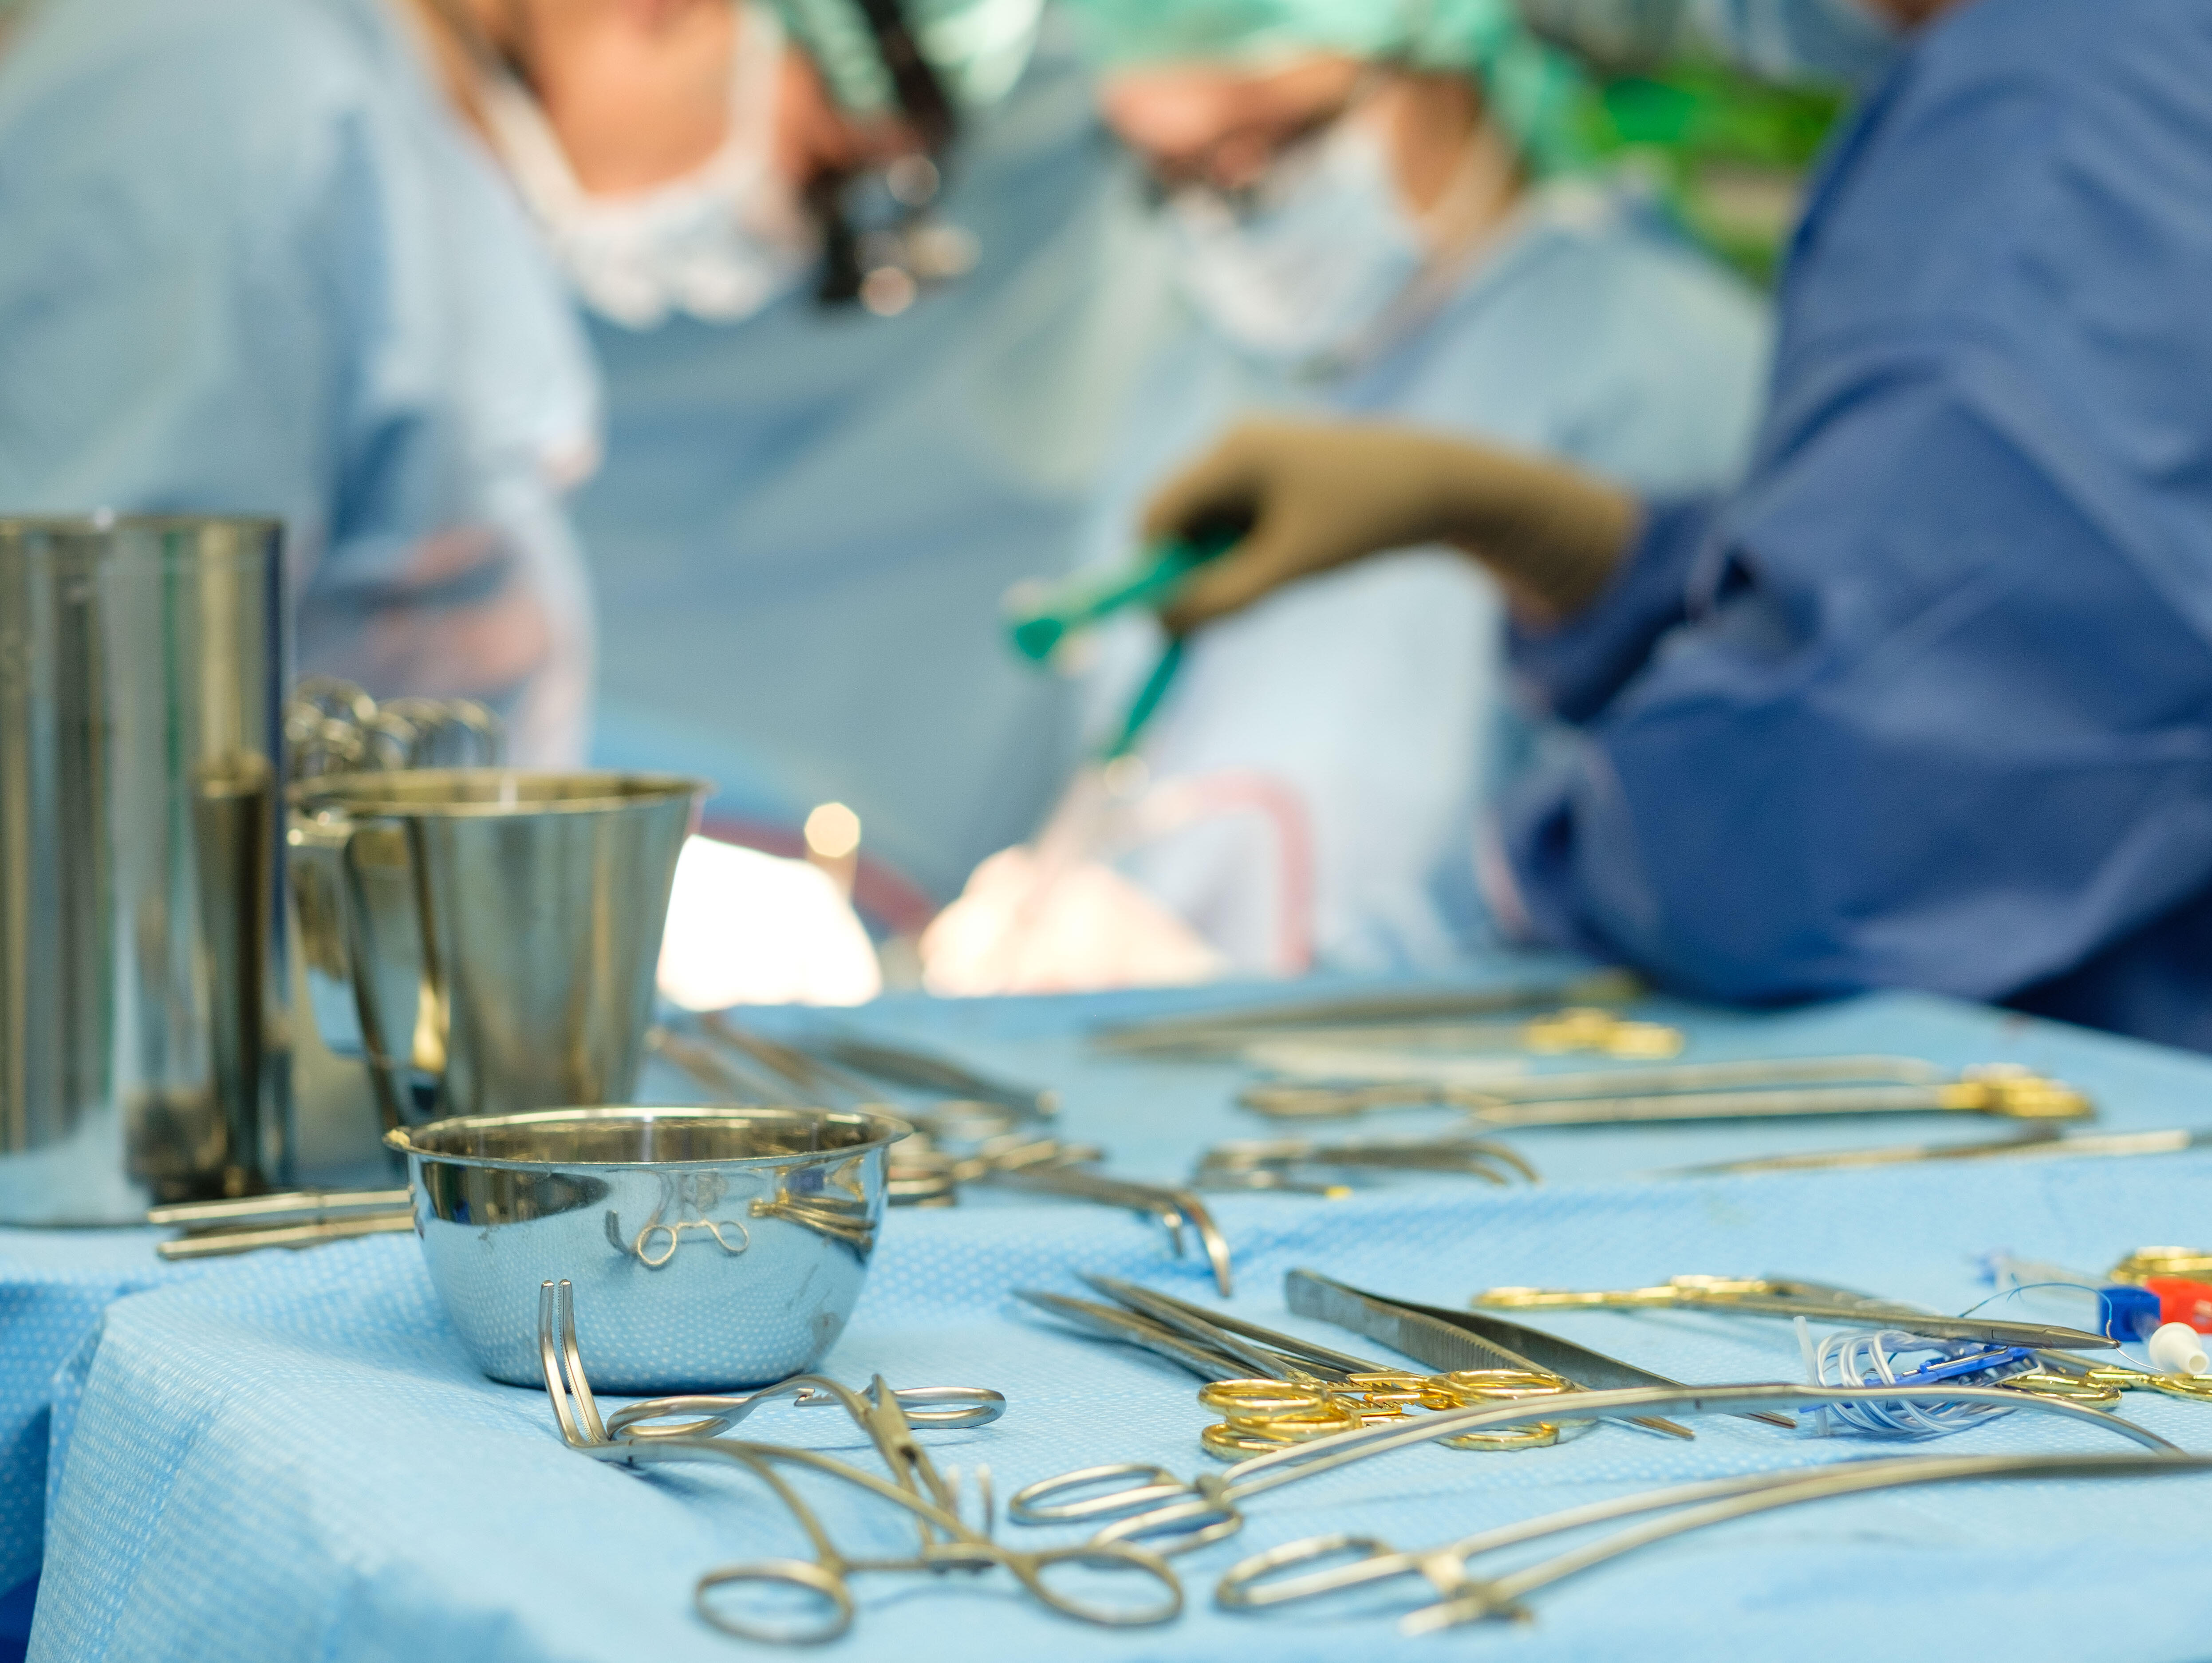 Instrumente für eine Herz-OP liegen auf einem Operationstisch, im Hintergrund sieht man operierende Ärzte